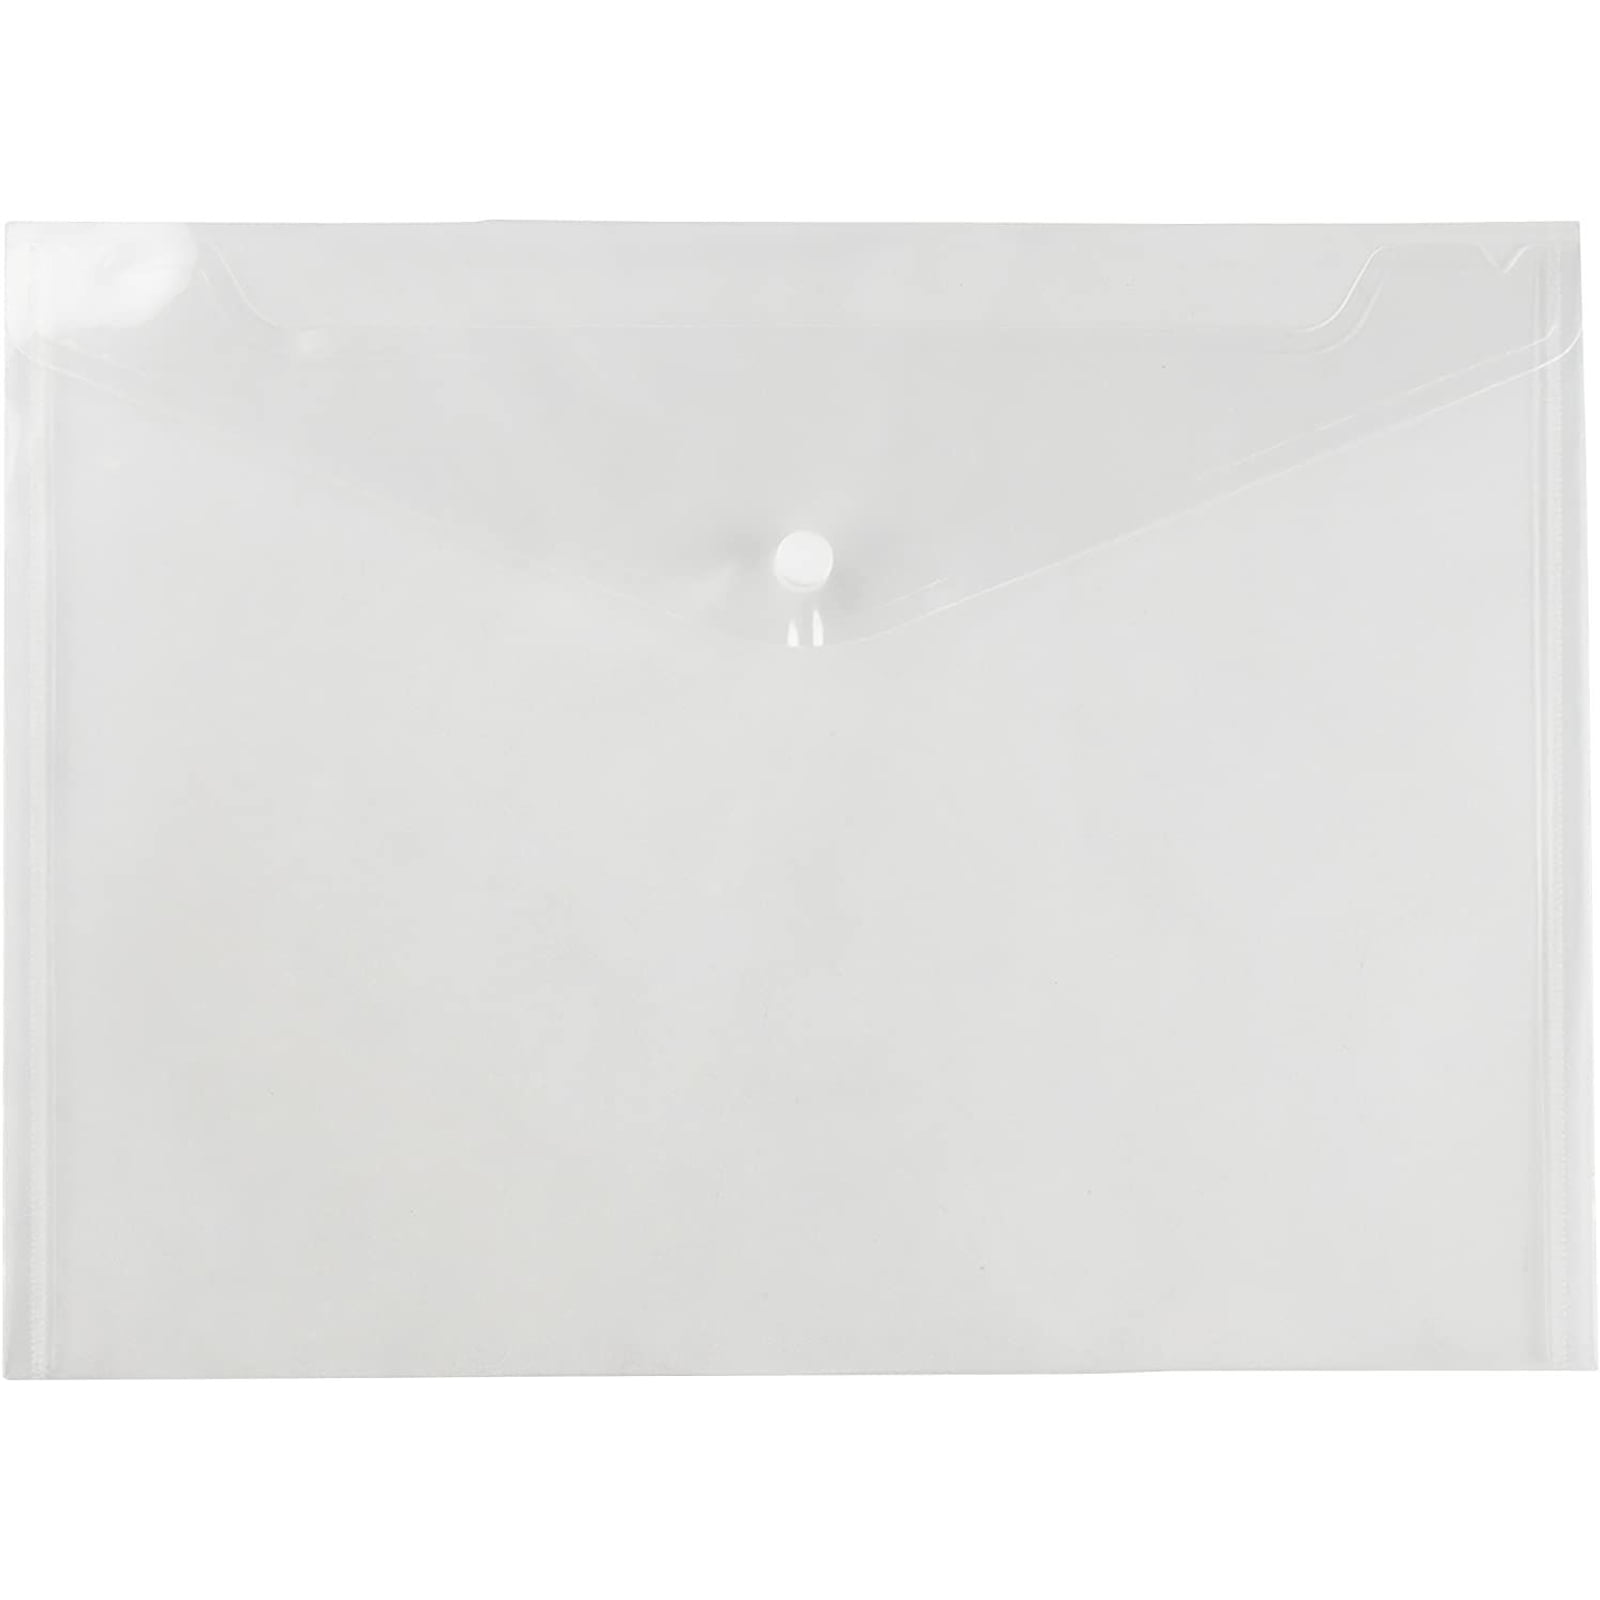 Details about   White File Protection Folders 30cm X 23cm 100pcs/bag Autumn Pockets Folders SH 